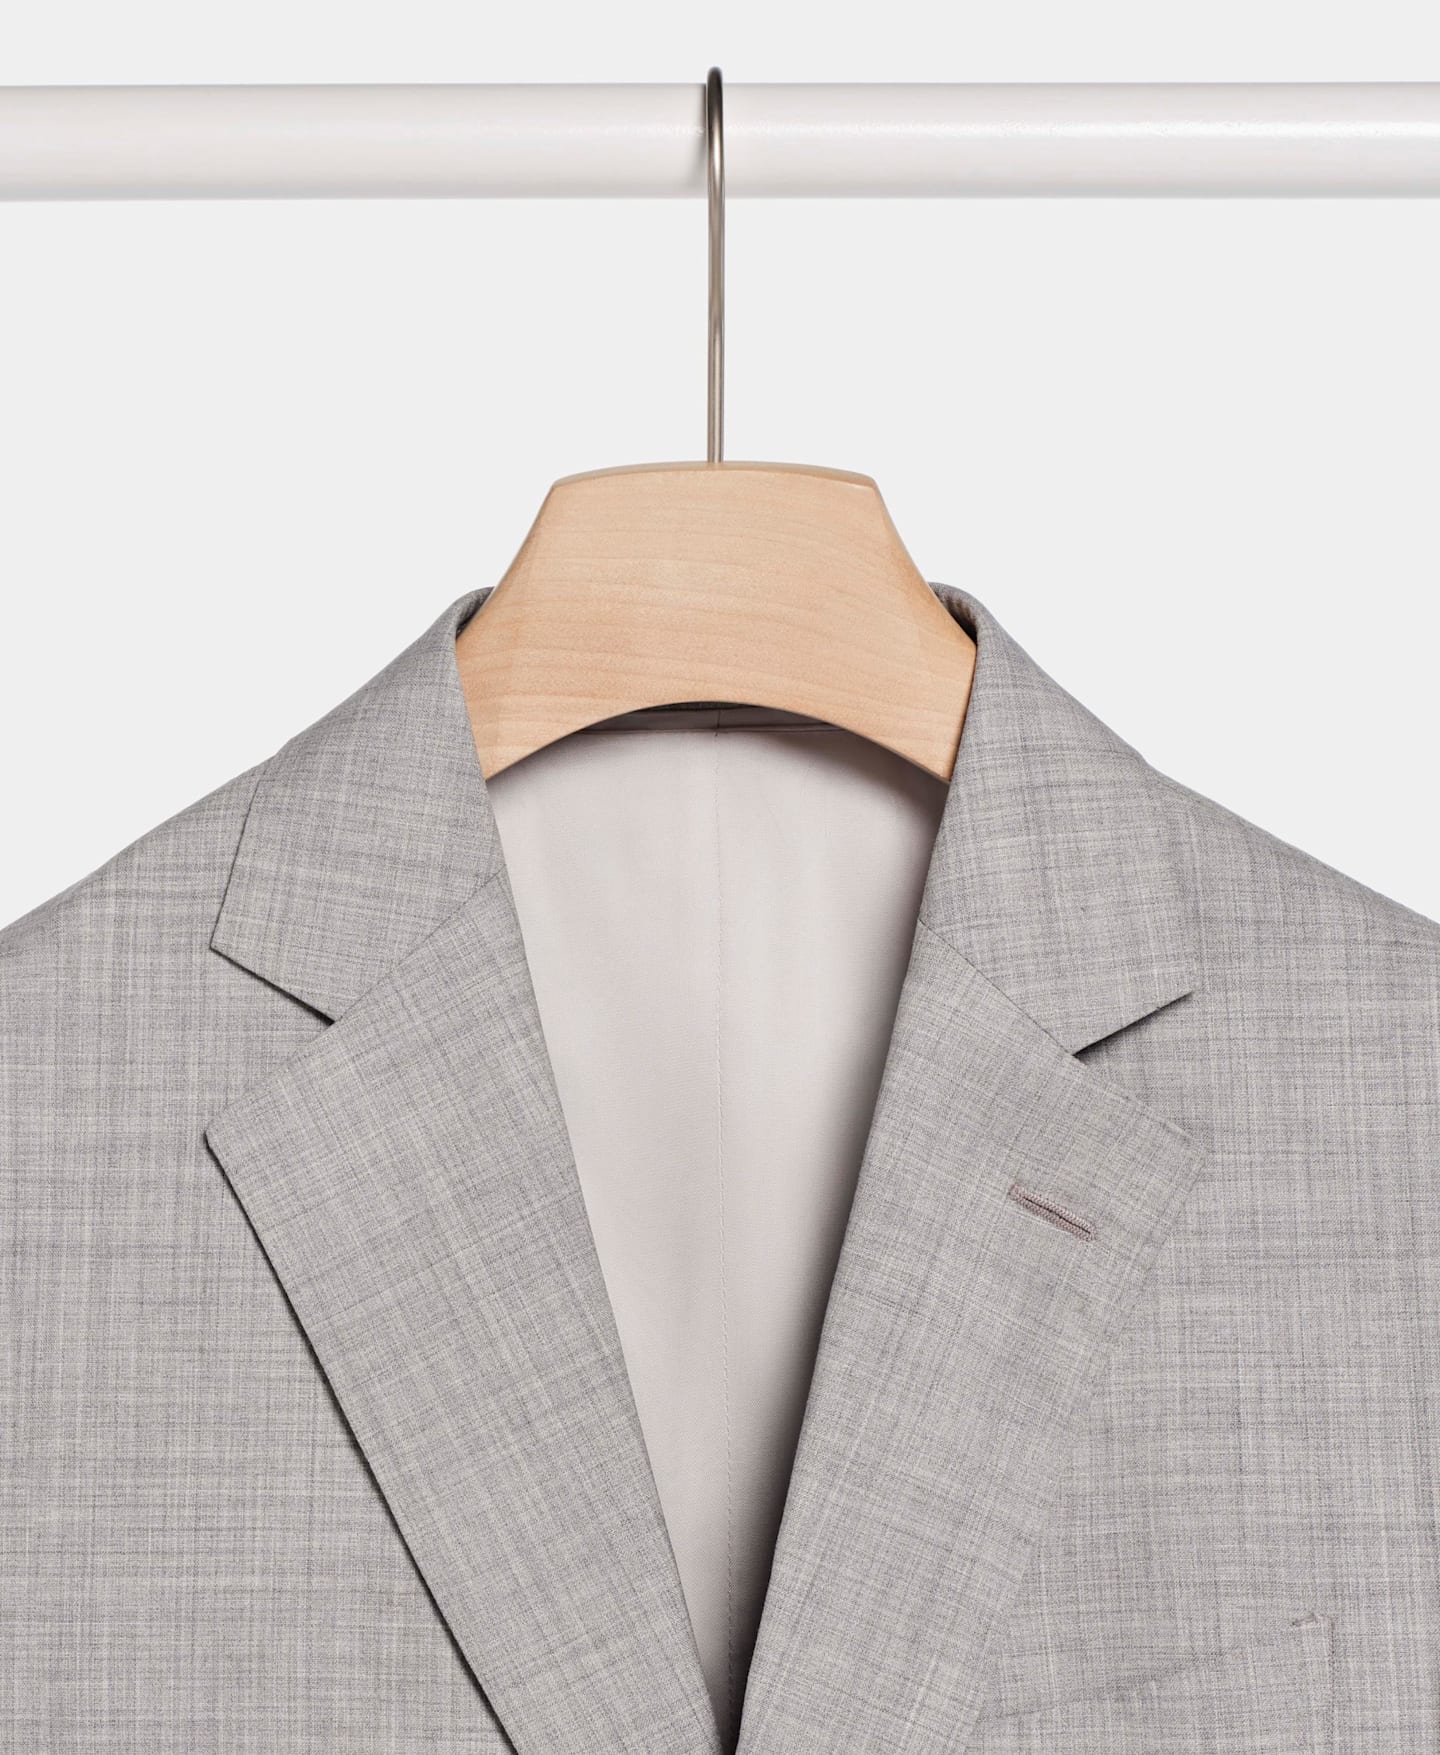 Gros plan sur une veste de costume gris clair sur un cintre en bois